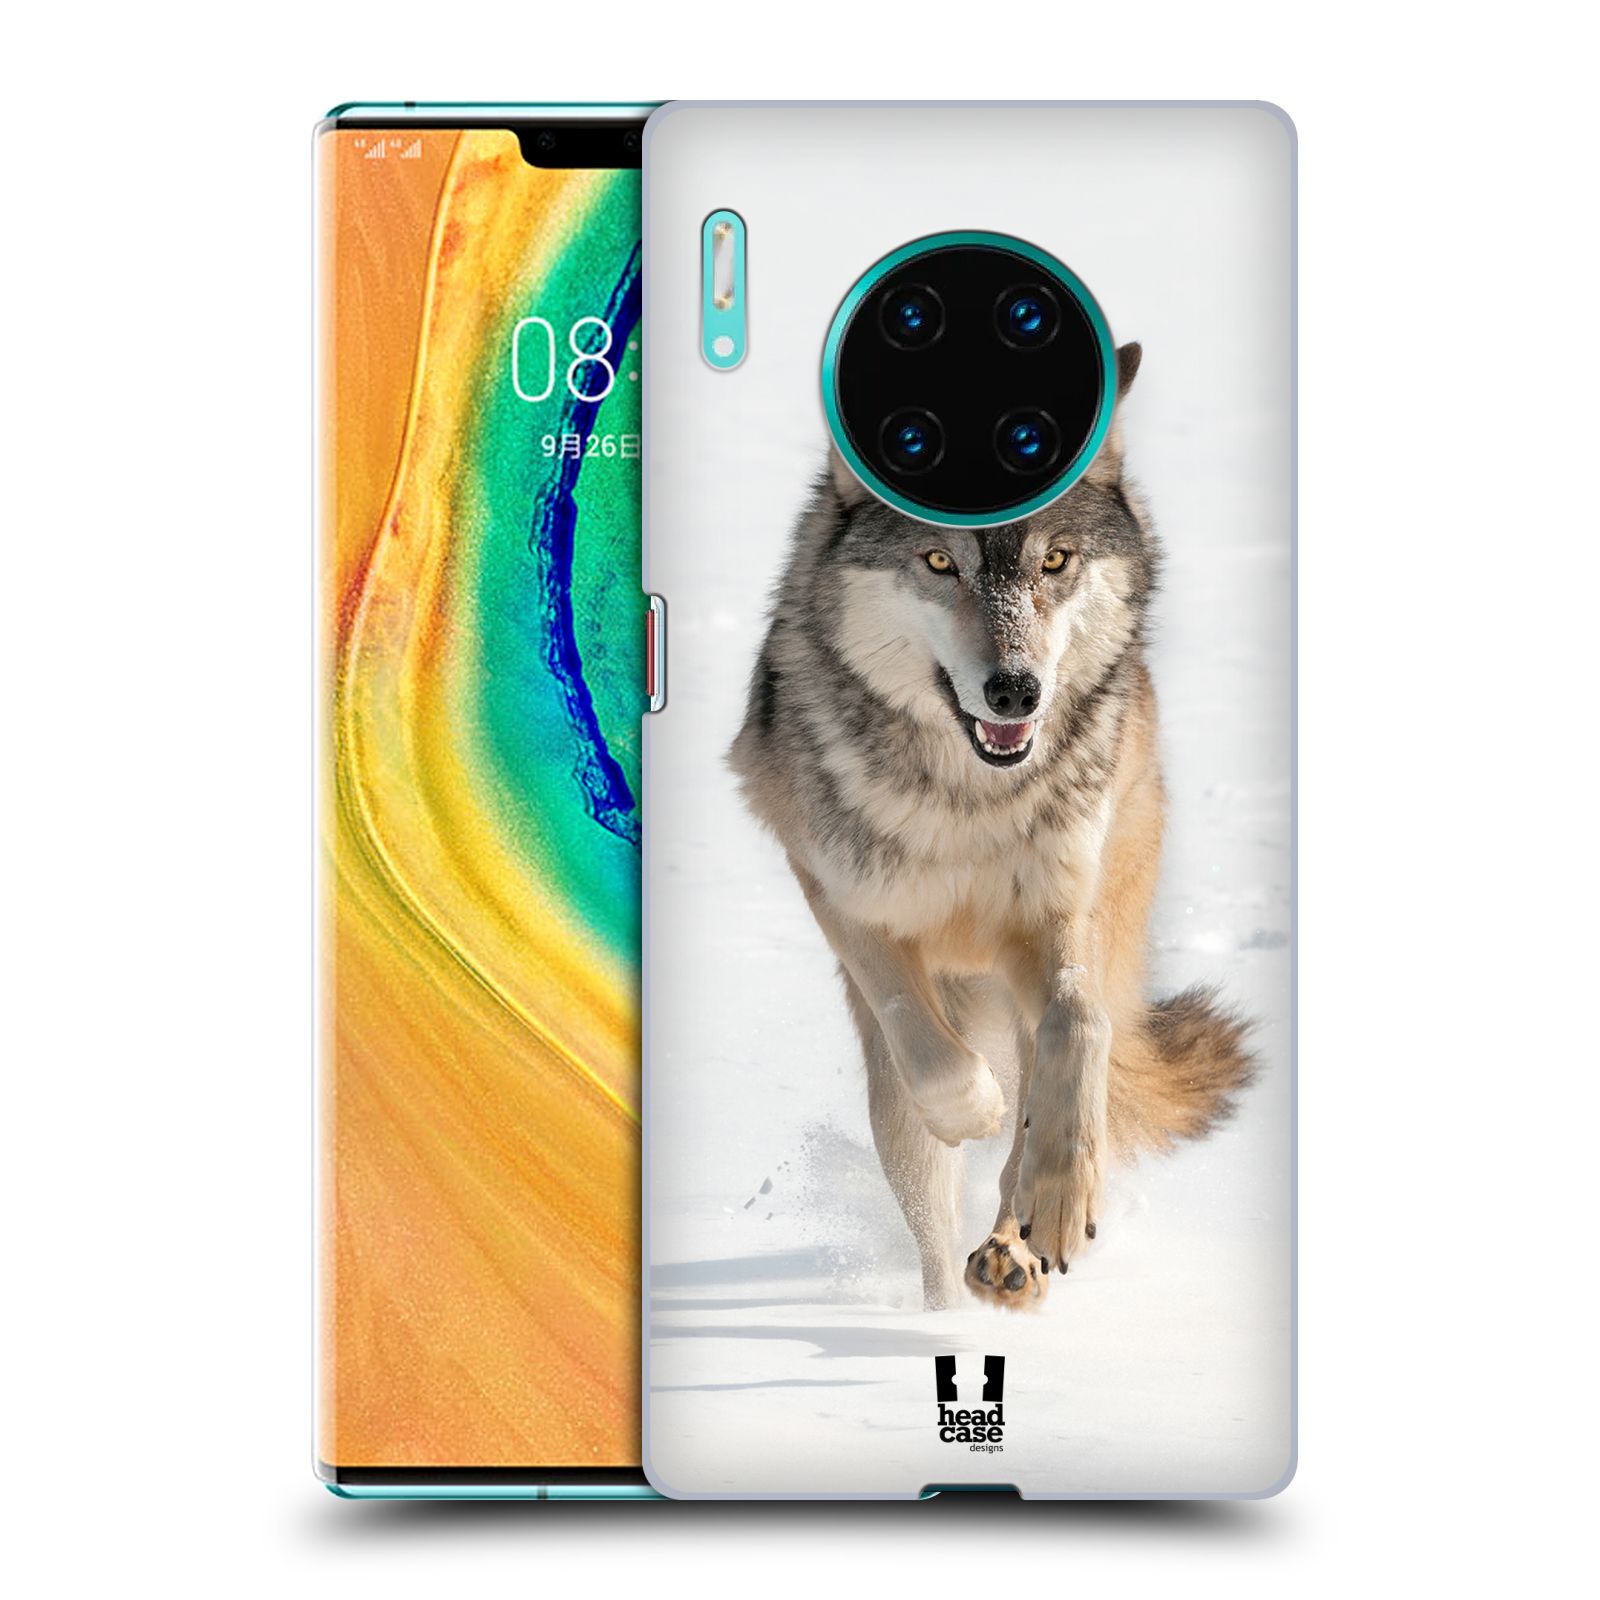 Zadní obal pro mobil Huawei Mate 30 PRO - HEAD CASE - Svět zvířat divoký vlk